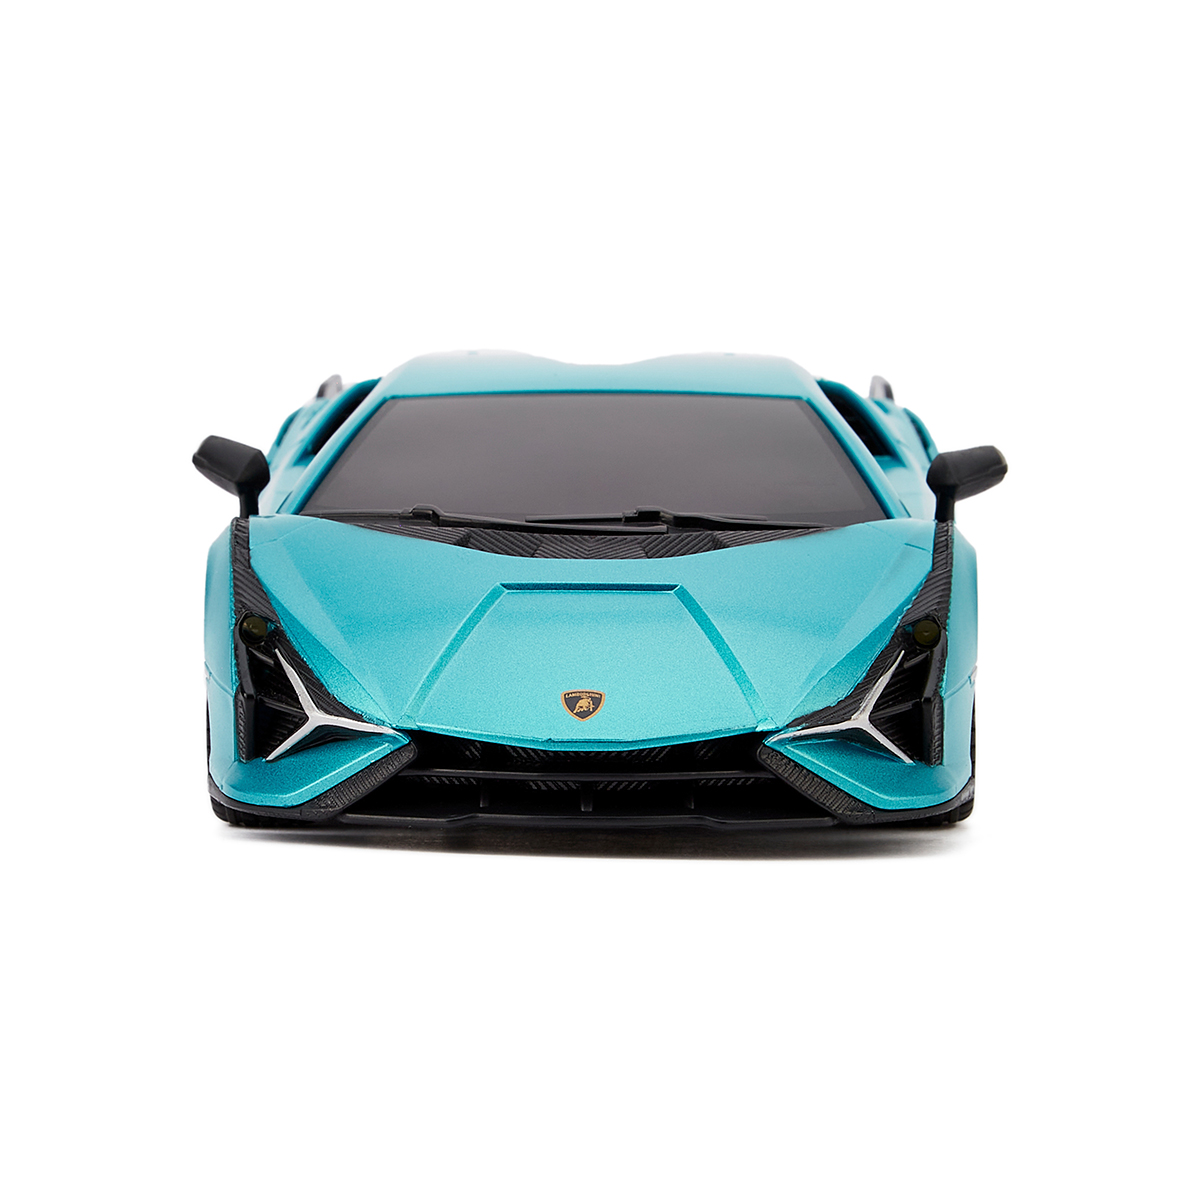 Автомобіль KS Drive на р/к Lamborghini Sian 1:24, 2.4Ghz синій (124GLSB) - фото 2